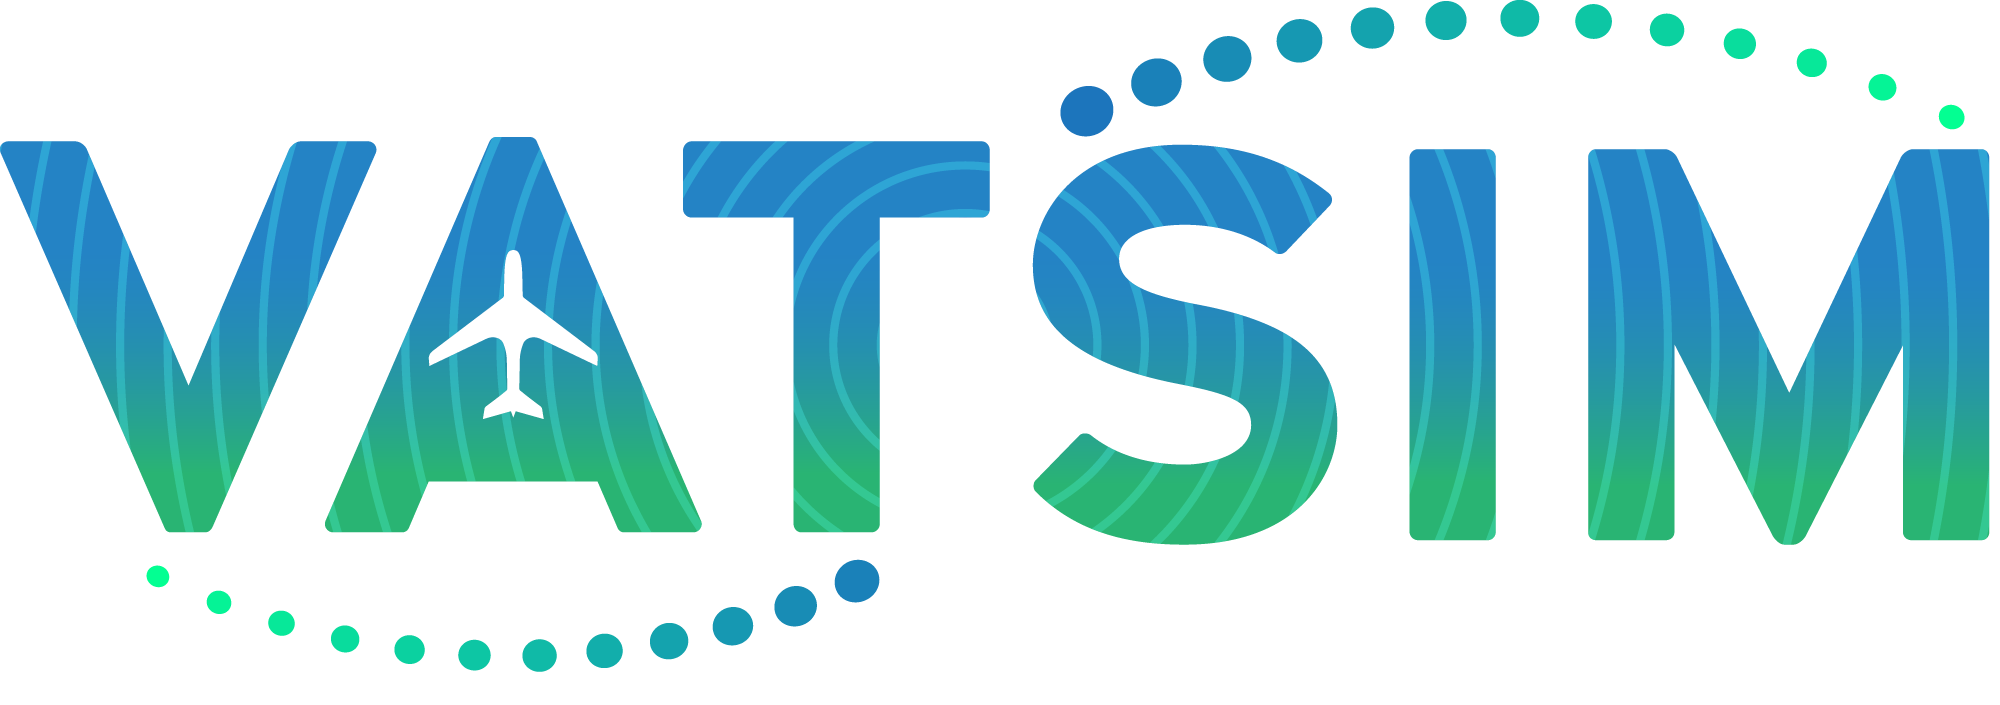 VATSIM Asia Pacific Region